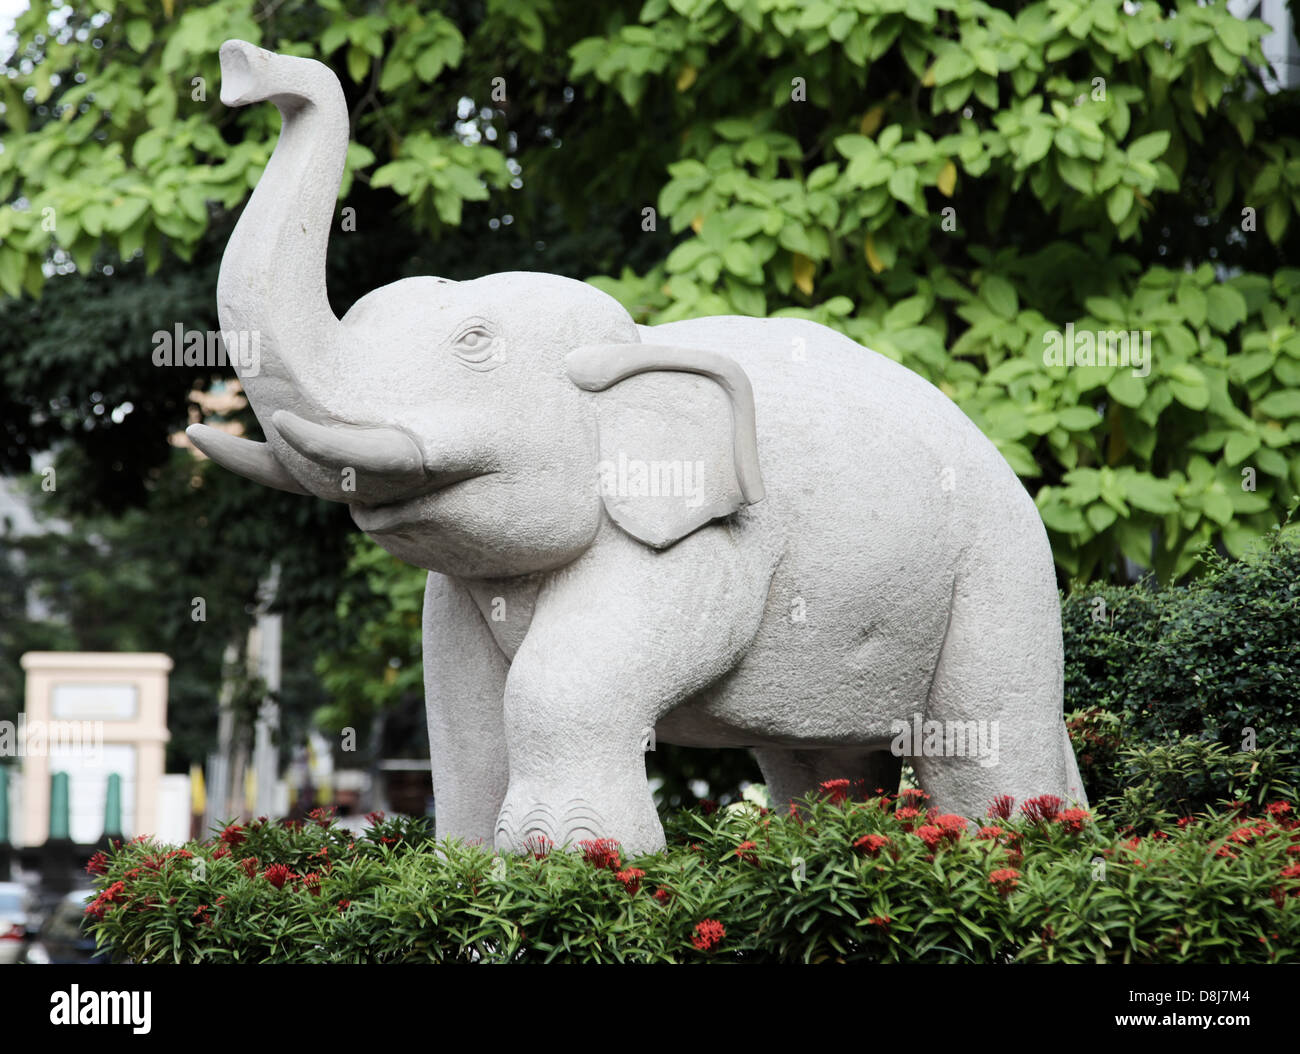 C'est une photo d'une sculpture de l'éléphant. C'est une statue de pierre ou de bois. Nous voyons une gamme, c'est en Thaïlande, en extérieur par la lumière du jour Banque D'Images